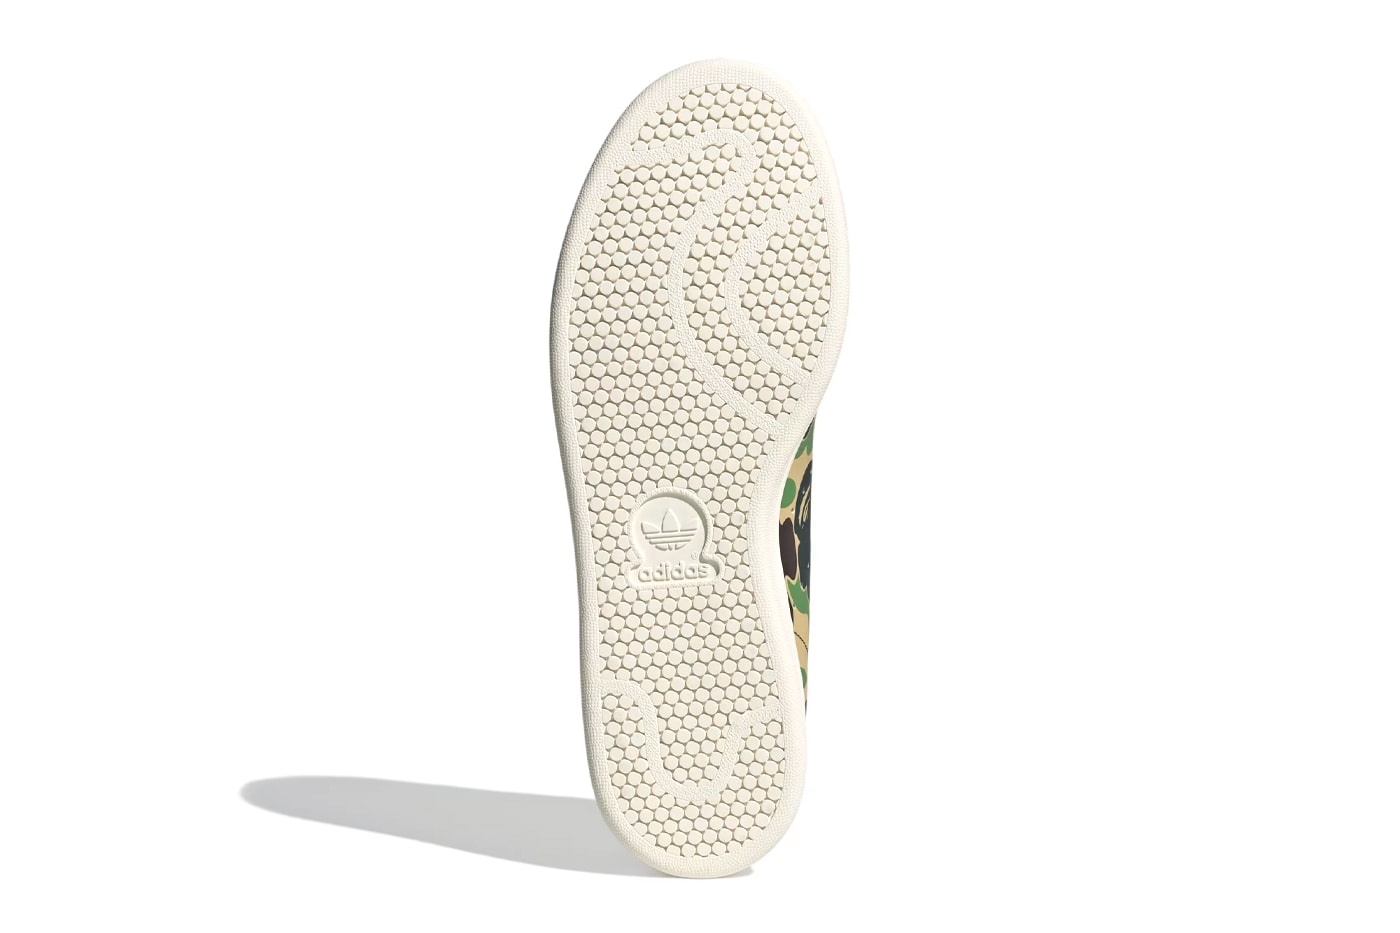 A BATHING APE® x adidas Stan Smith 全新聯名鞋款正式登場